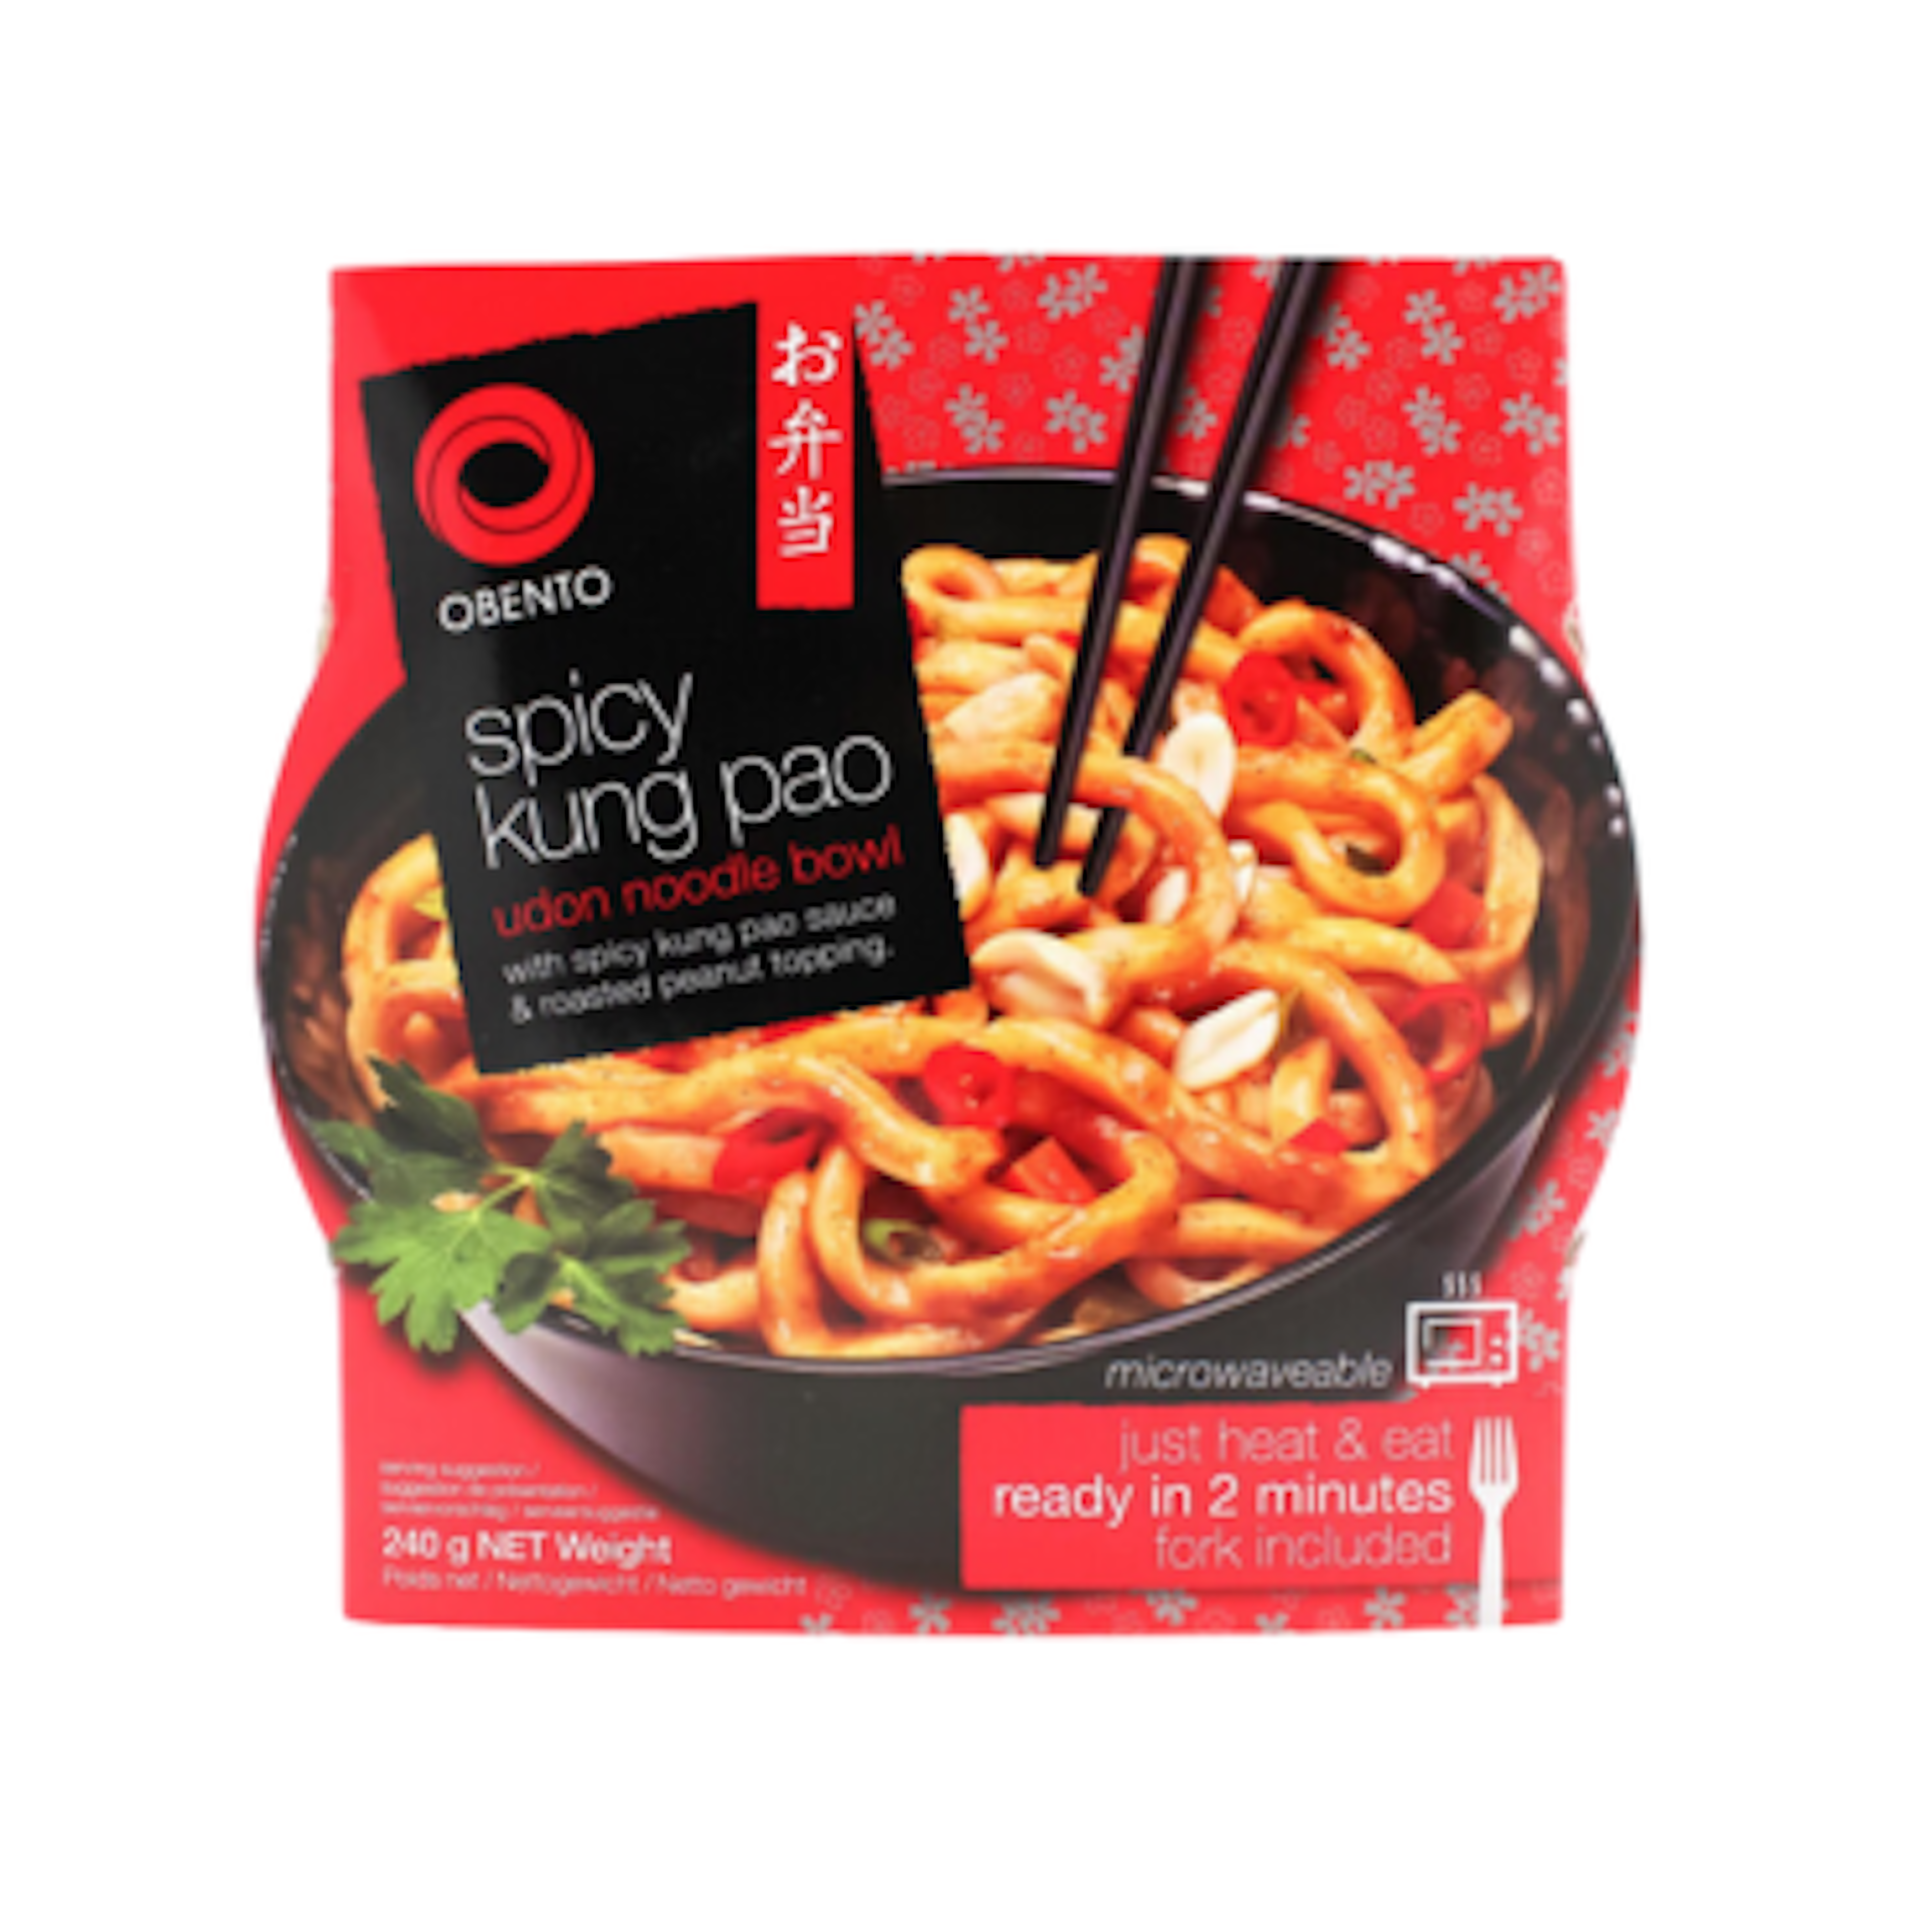 Vorderansicht der Obento Spicy Kung Pao Udon Noodle Bowl Verpackung: Zeigt das ansprechende Design und die Verpackungsgröße